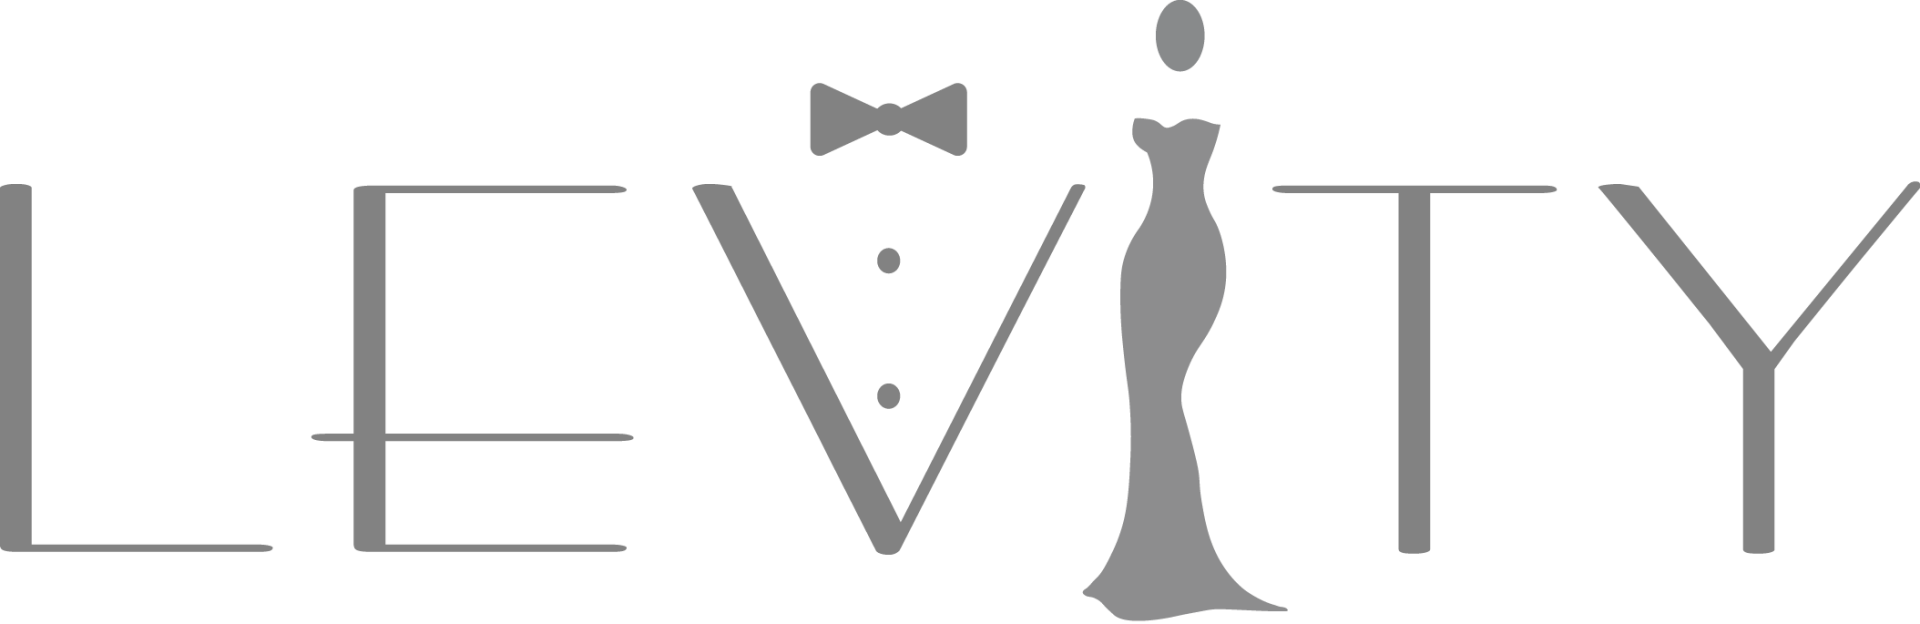 KC Wedding DJ Levity Weddings & Events Logo